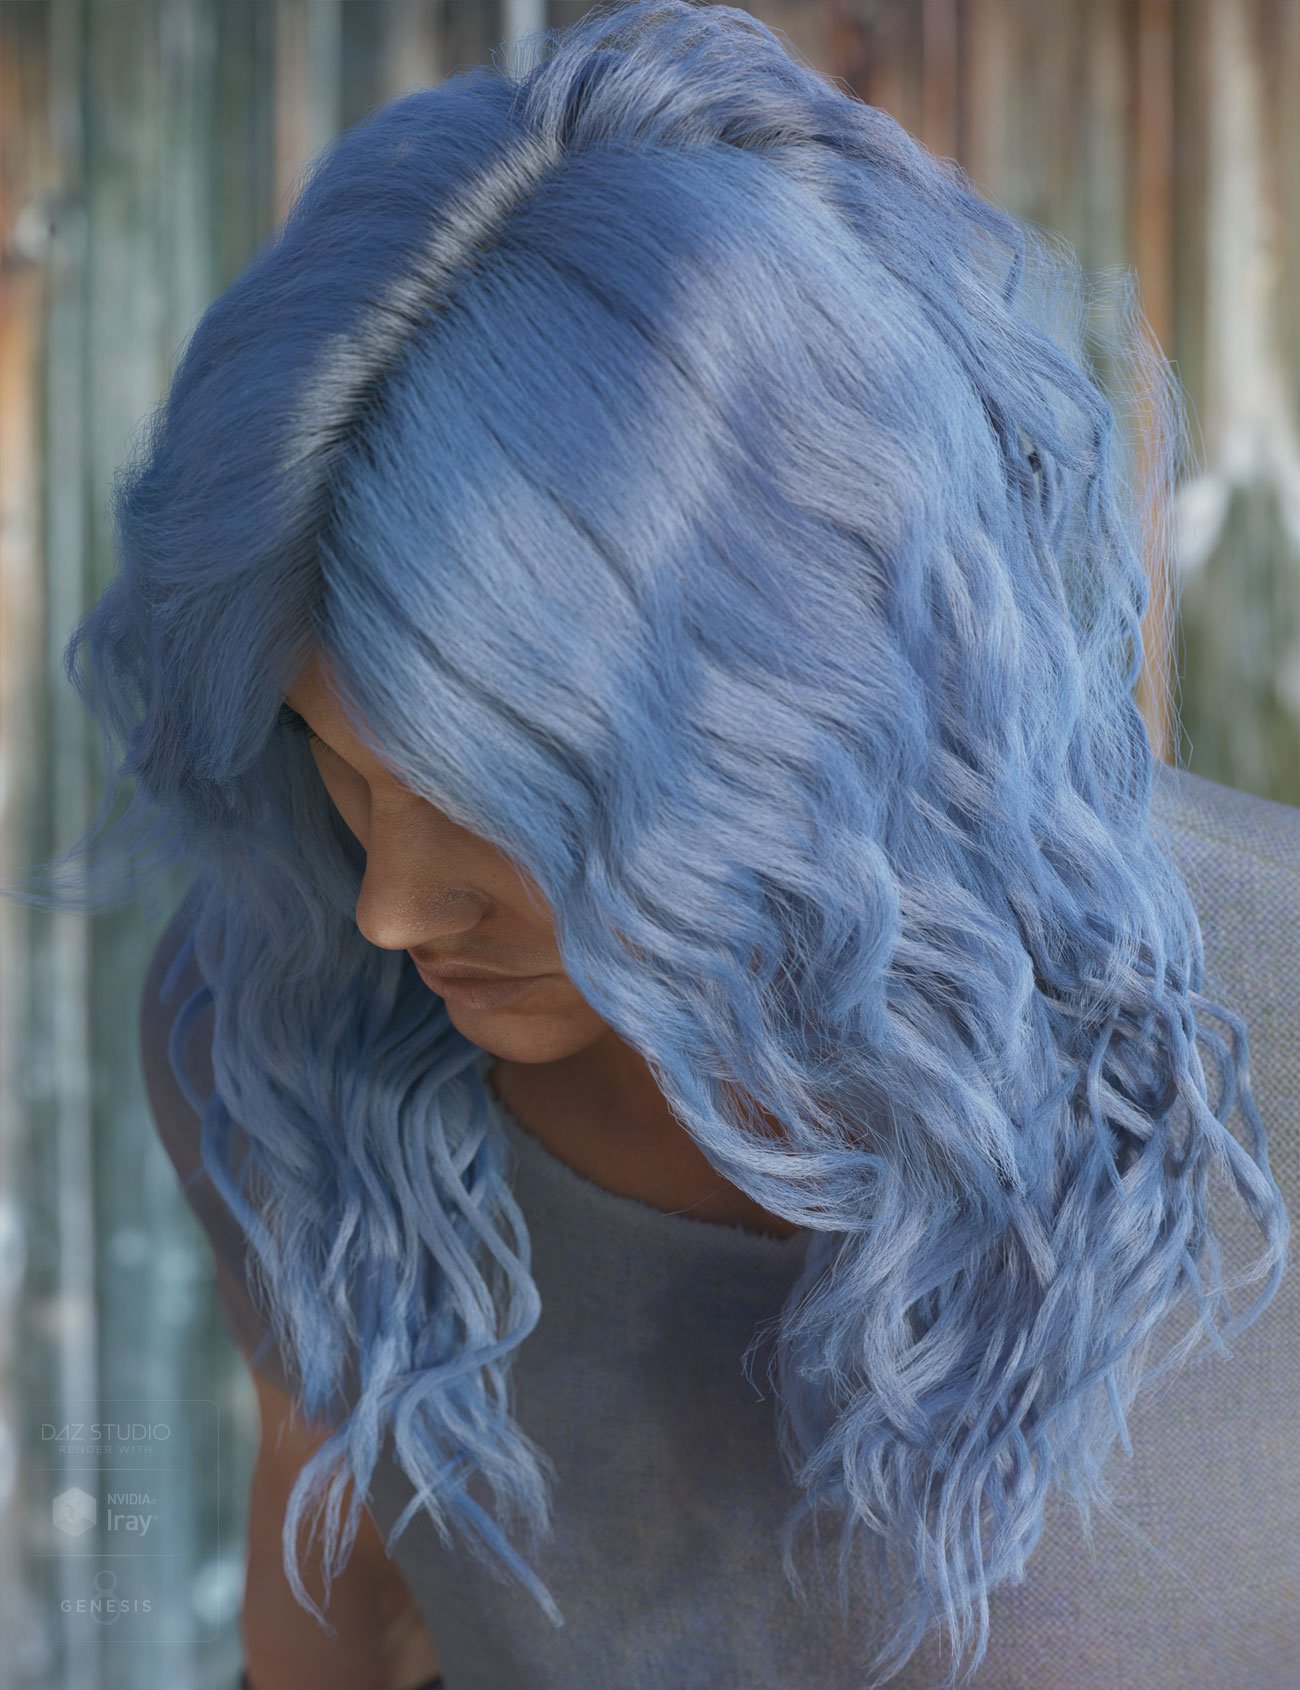 dForce Ezra Hair for Genesis 8 by: AprilYSH, 3D Models by Daz 3D